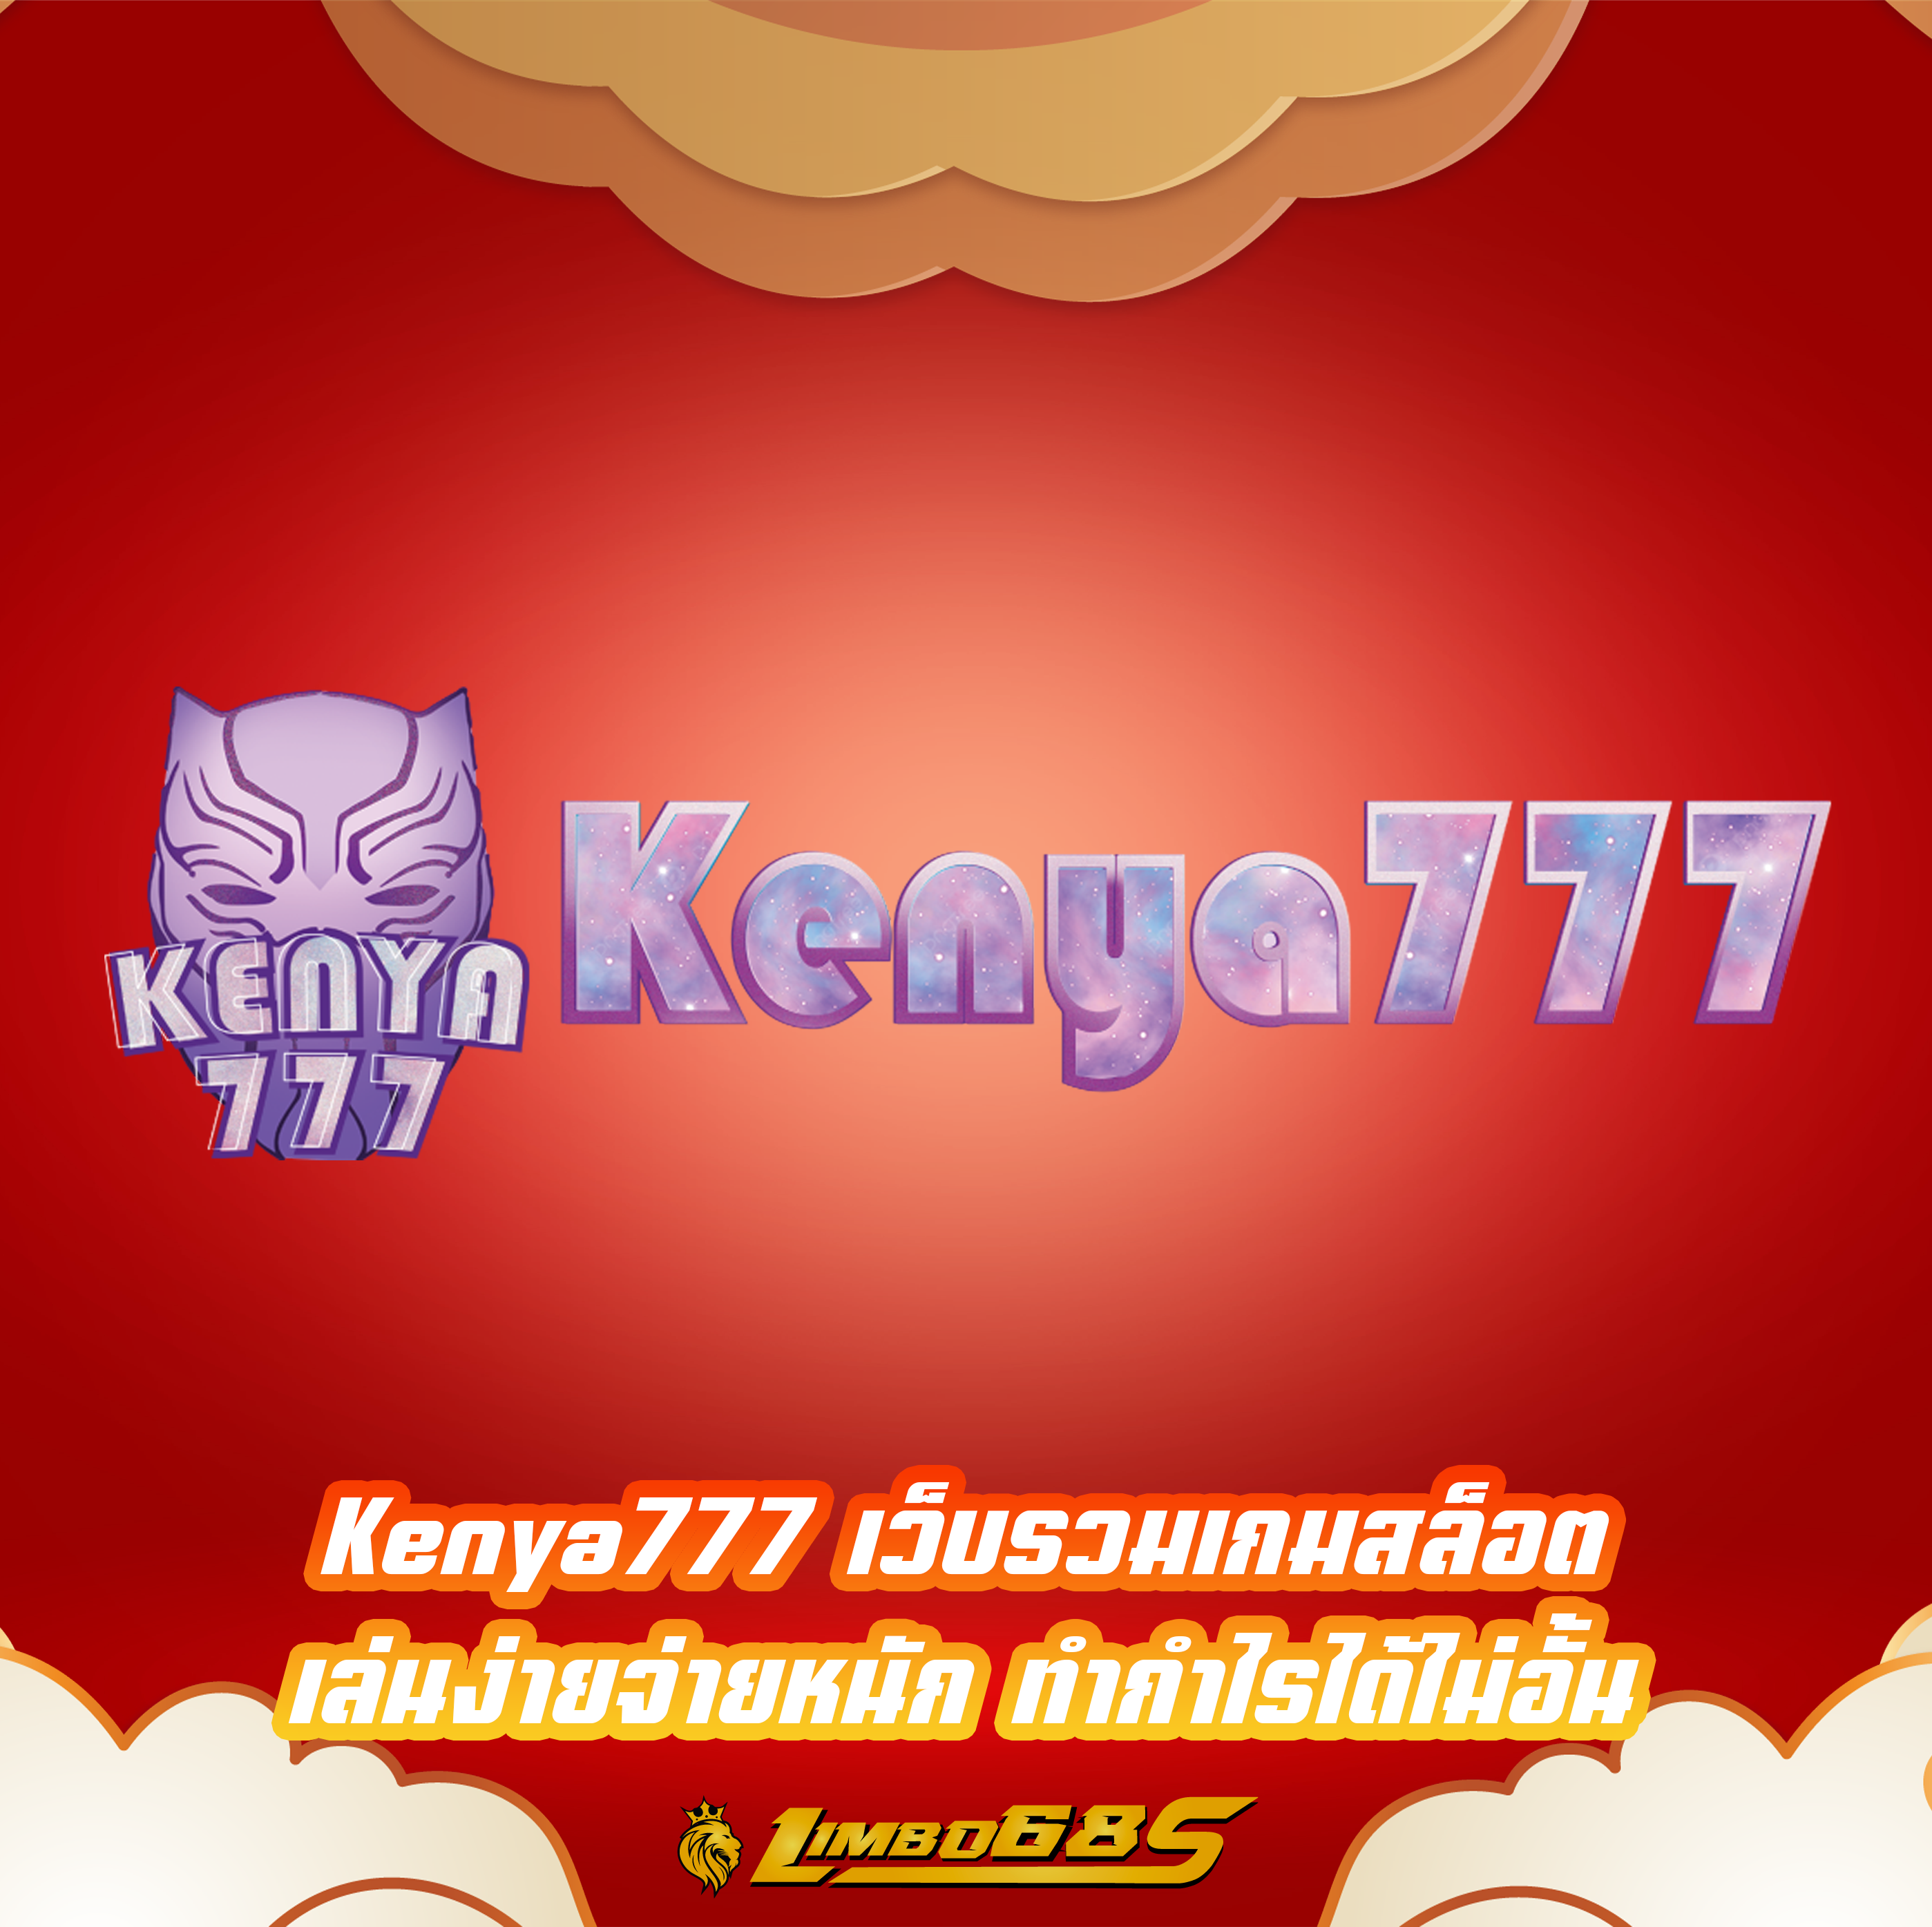 Kenya777 เว็บรวมเกมสล็อต เล่นง่ายจ่ายหนัก ทำกำไรได้ไม่อั้น